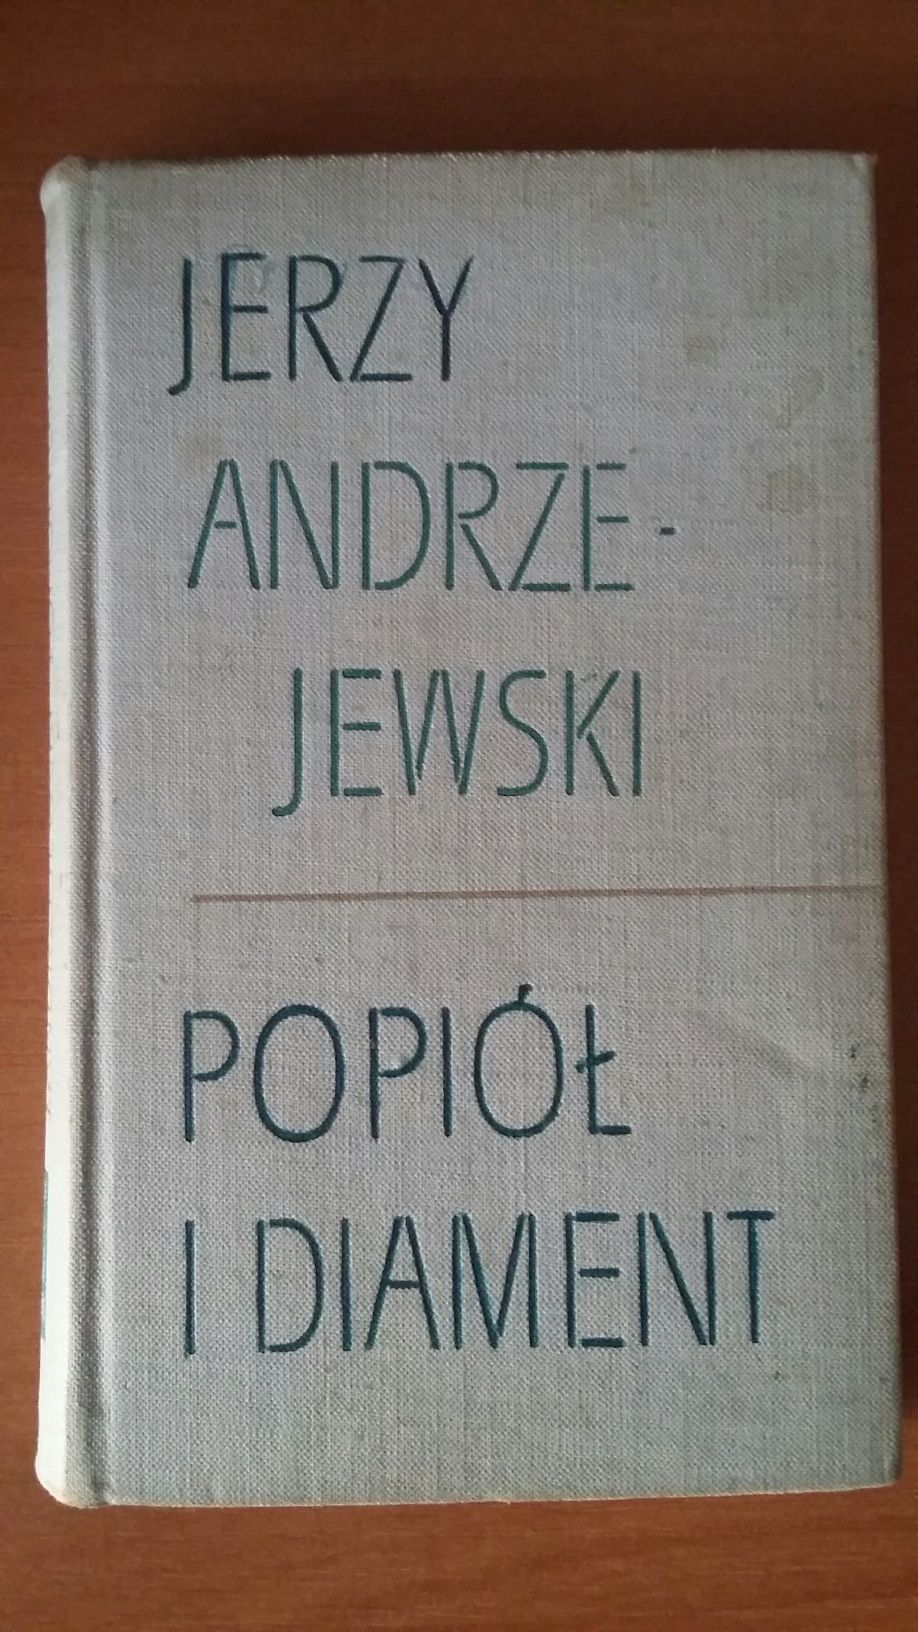 Popiół i diament - Jerzy Andrzejewski